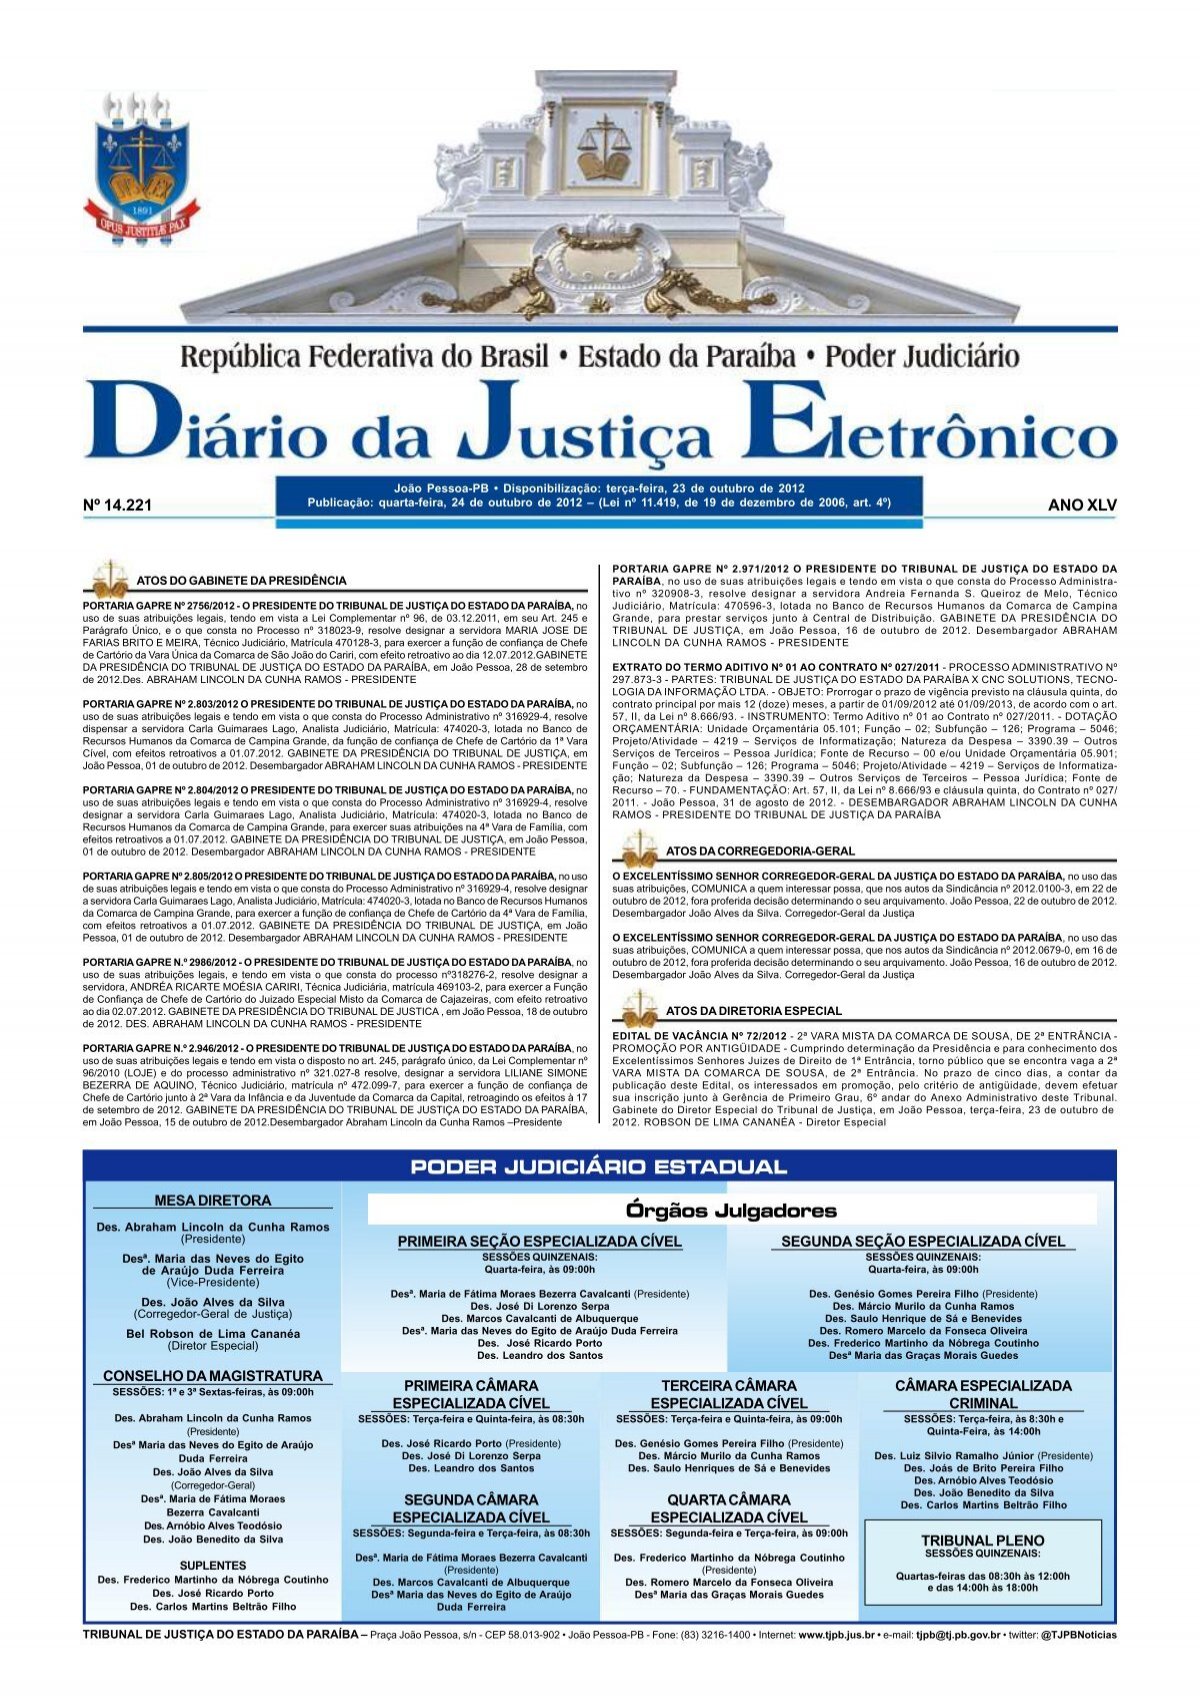 Rafael Fernandes - 21ª Câmara Cível Especializada - Tribunal de Justiça do  Estado de Minas Gerais